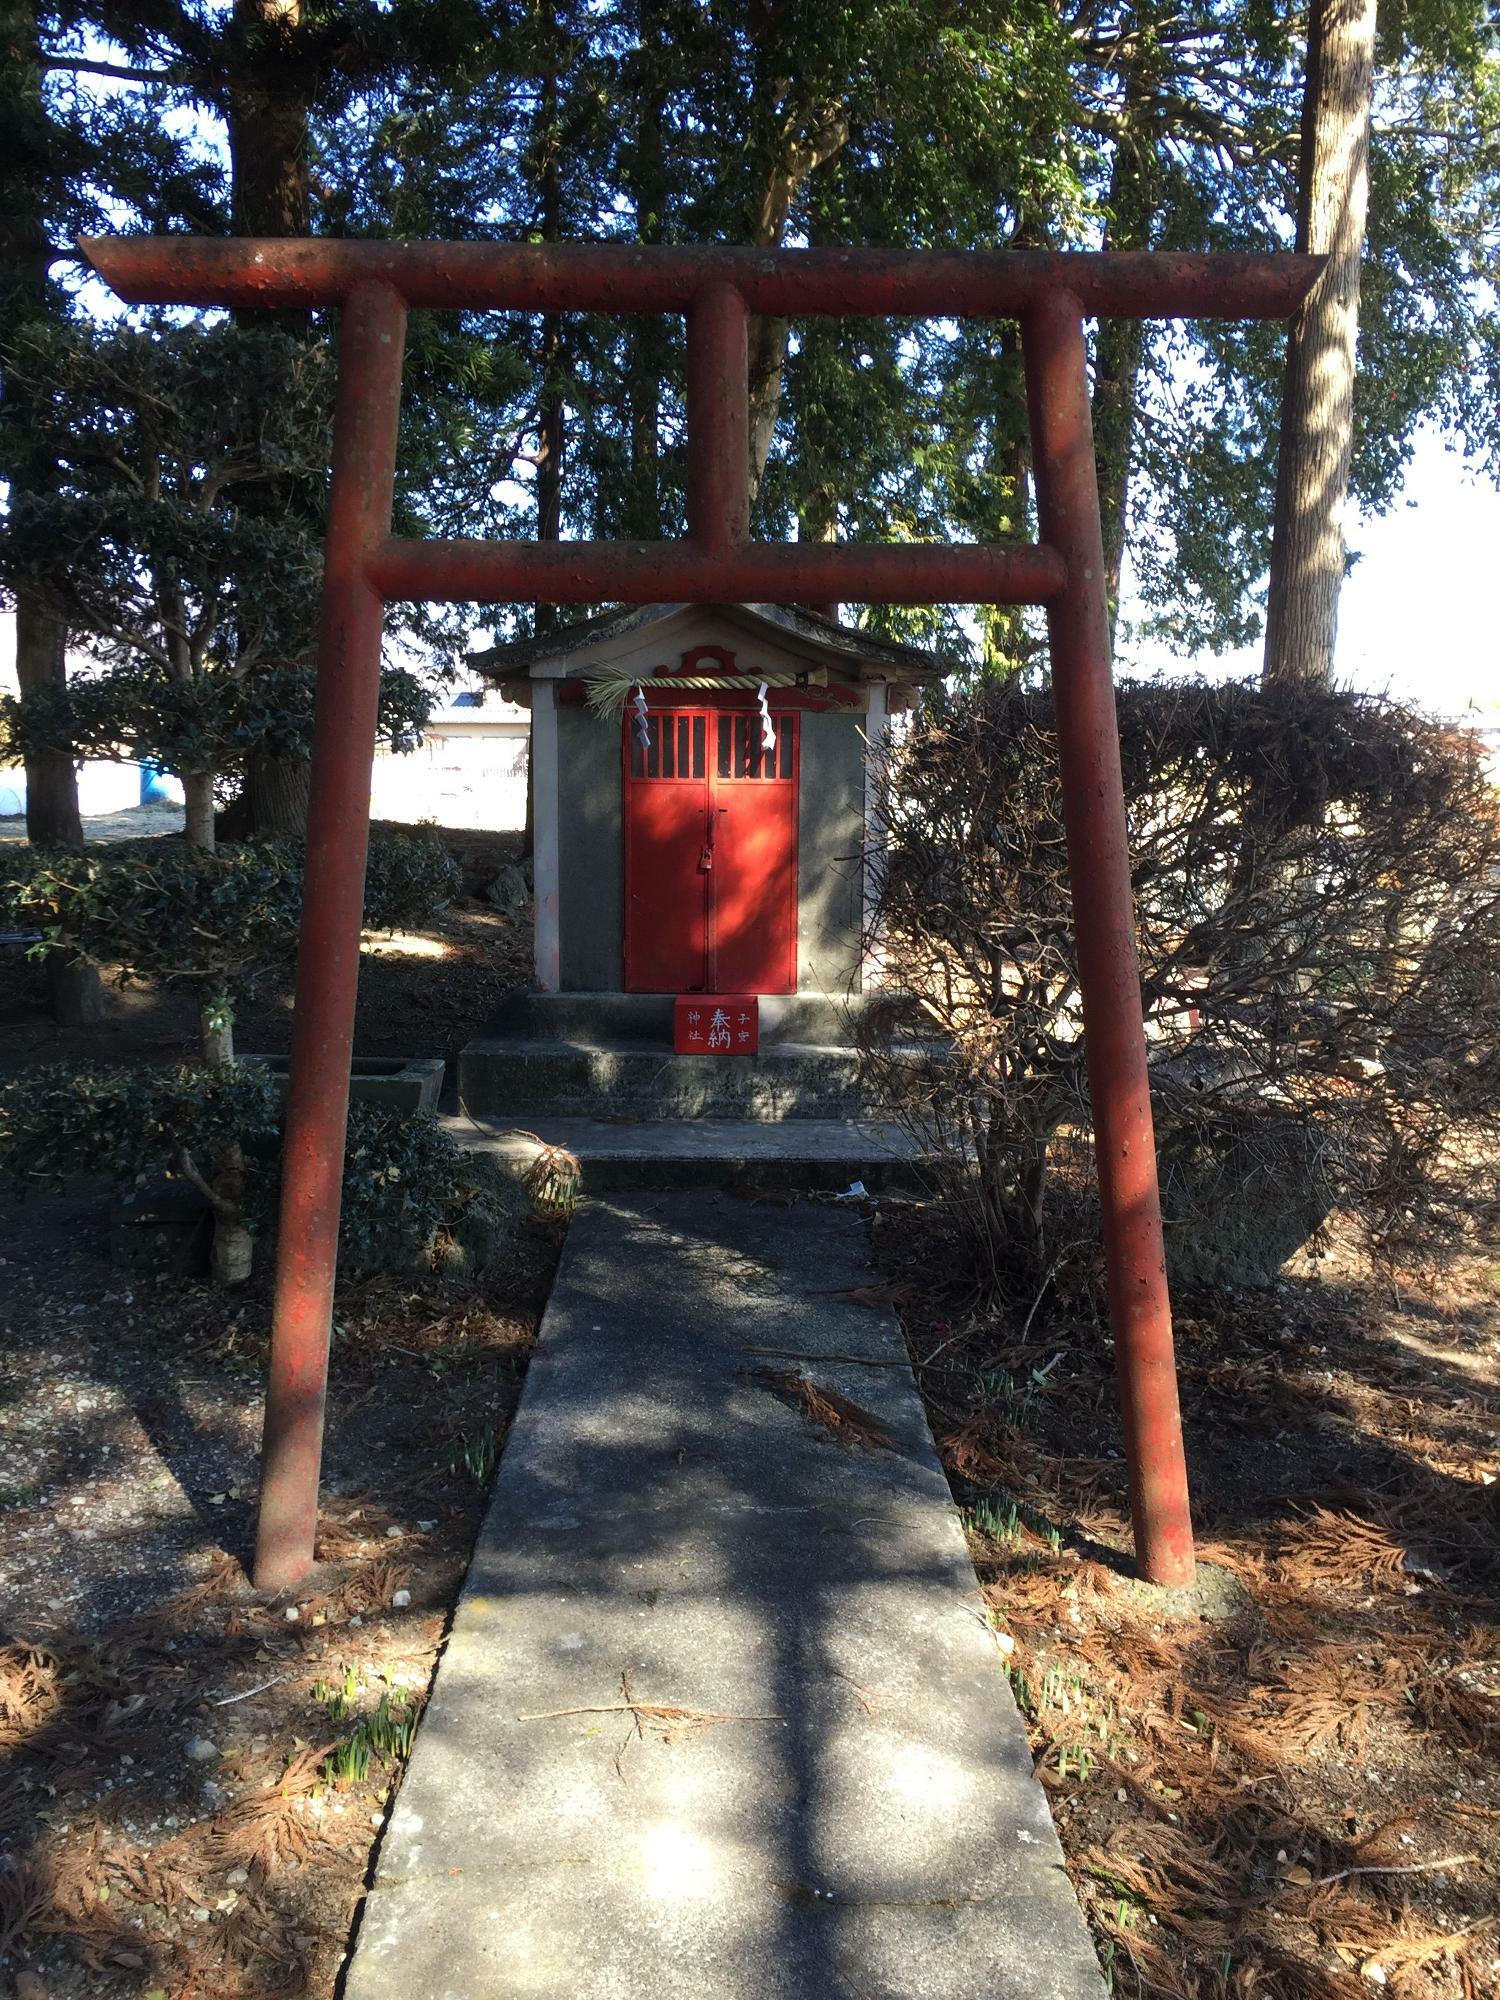 子安神社